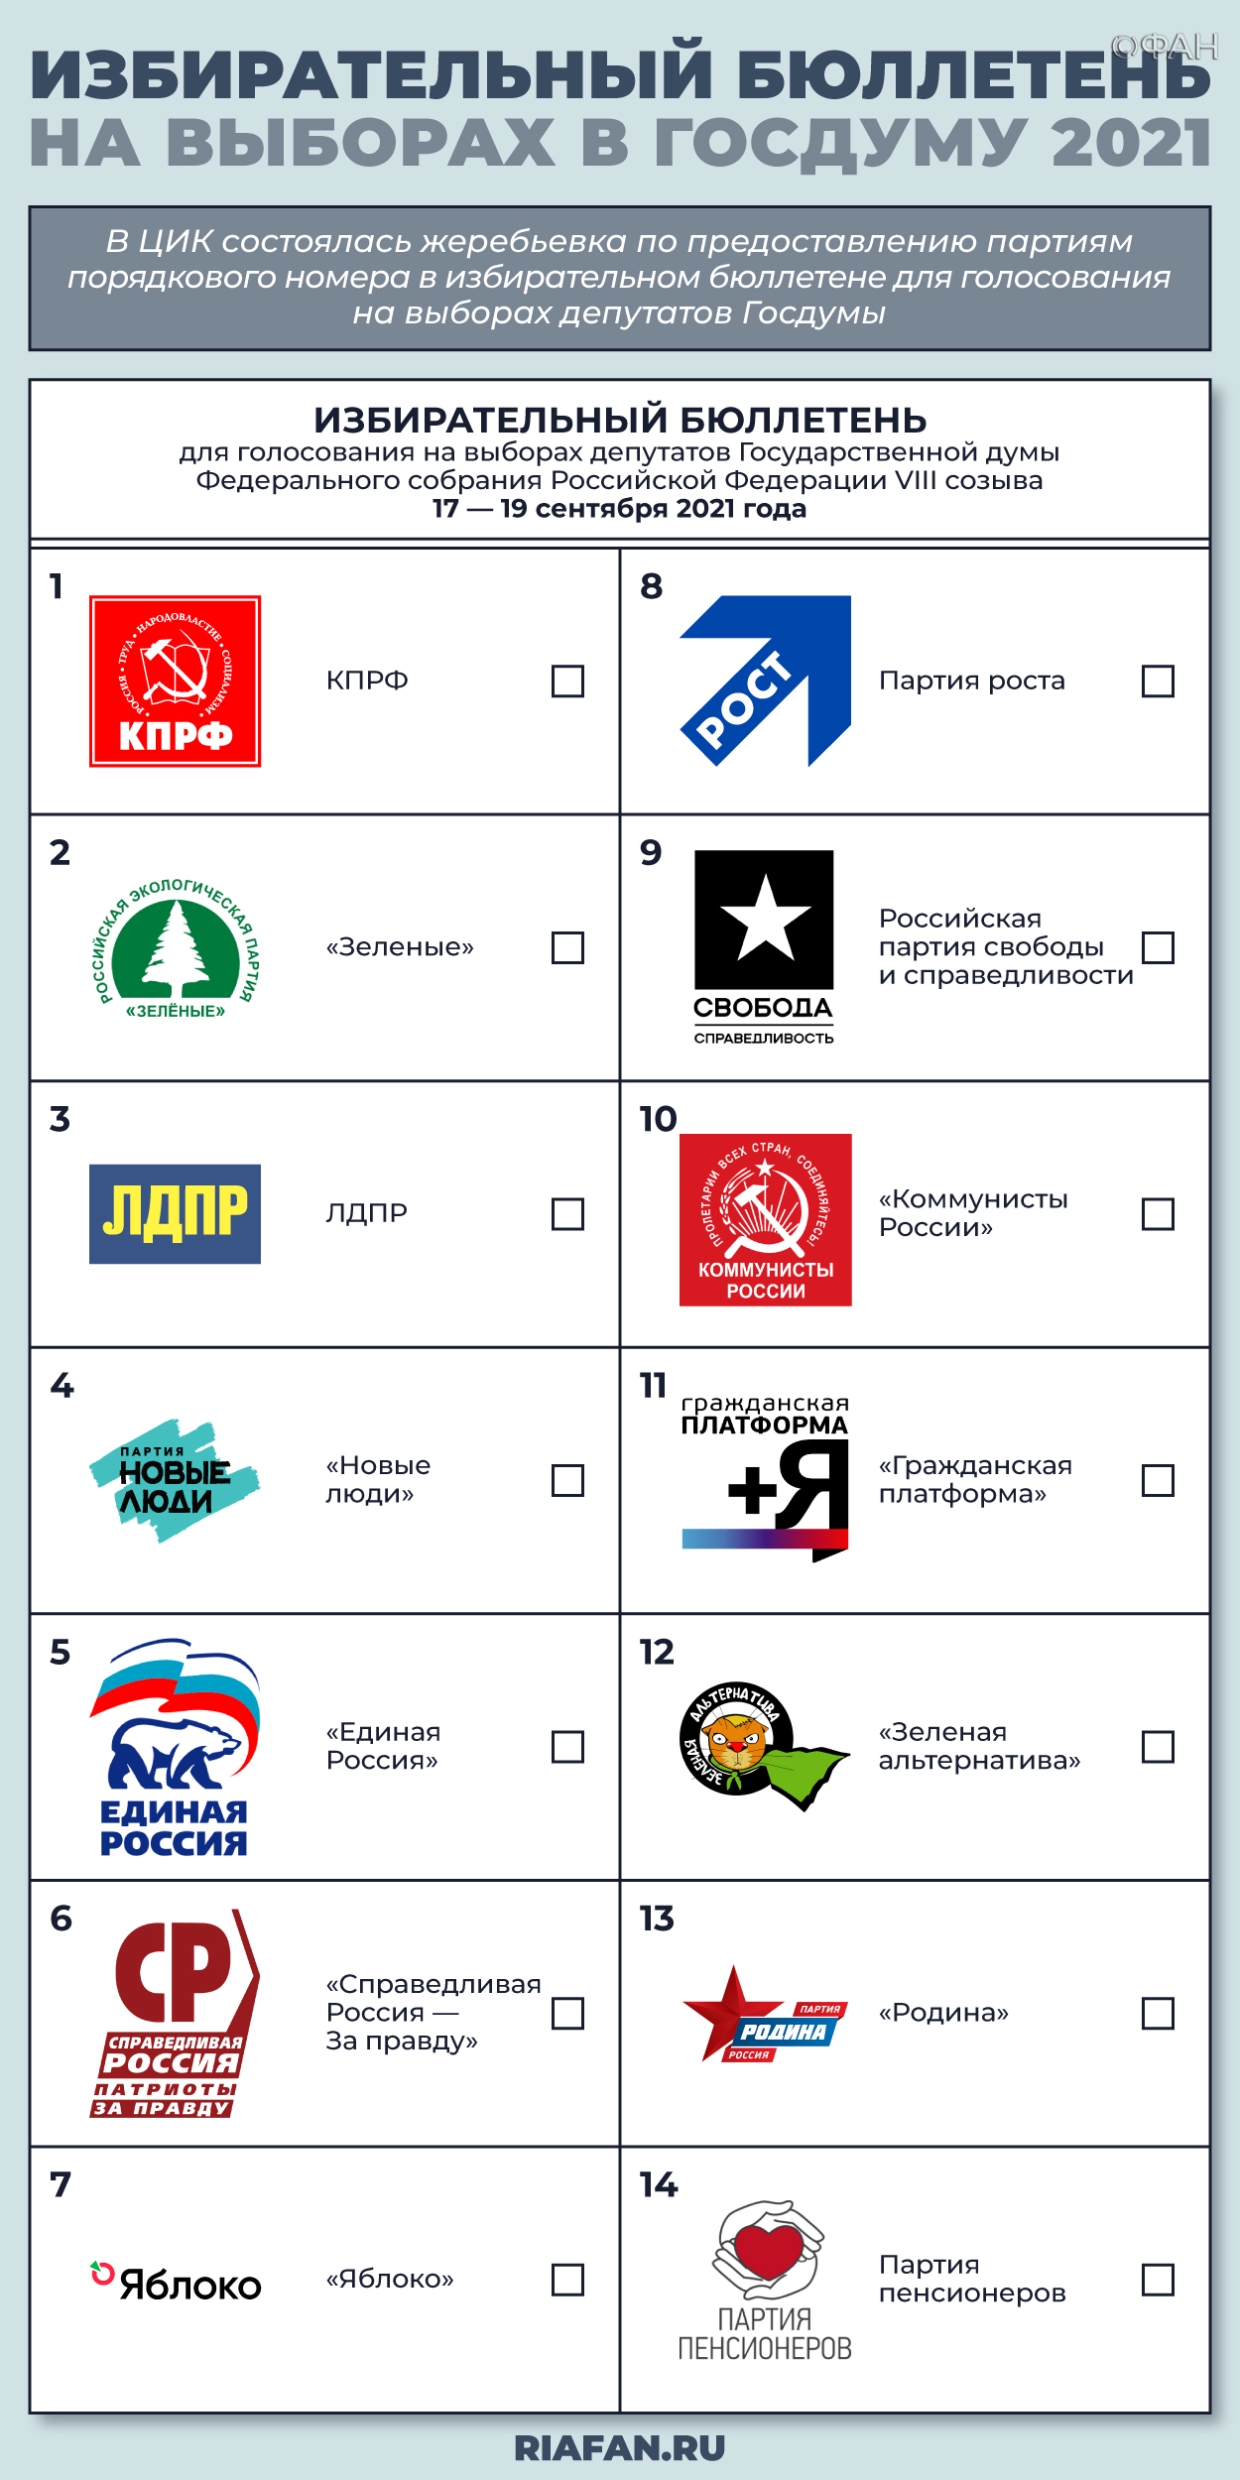 Бот-атаки с Украины и «серая» агитация: чем еще удивляет избирательная кампания 2021